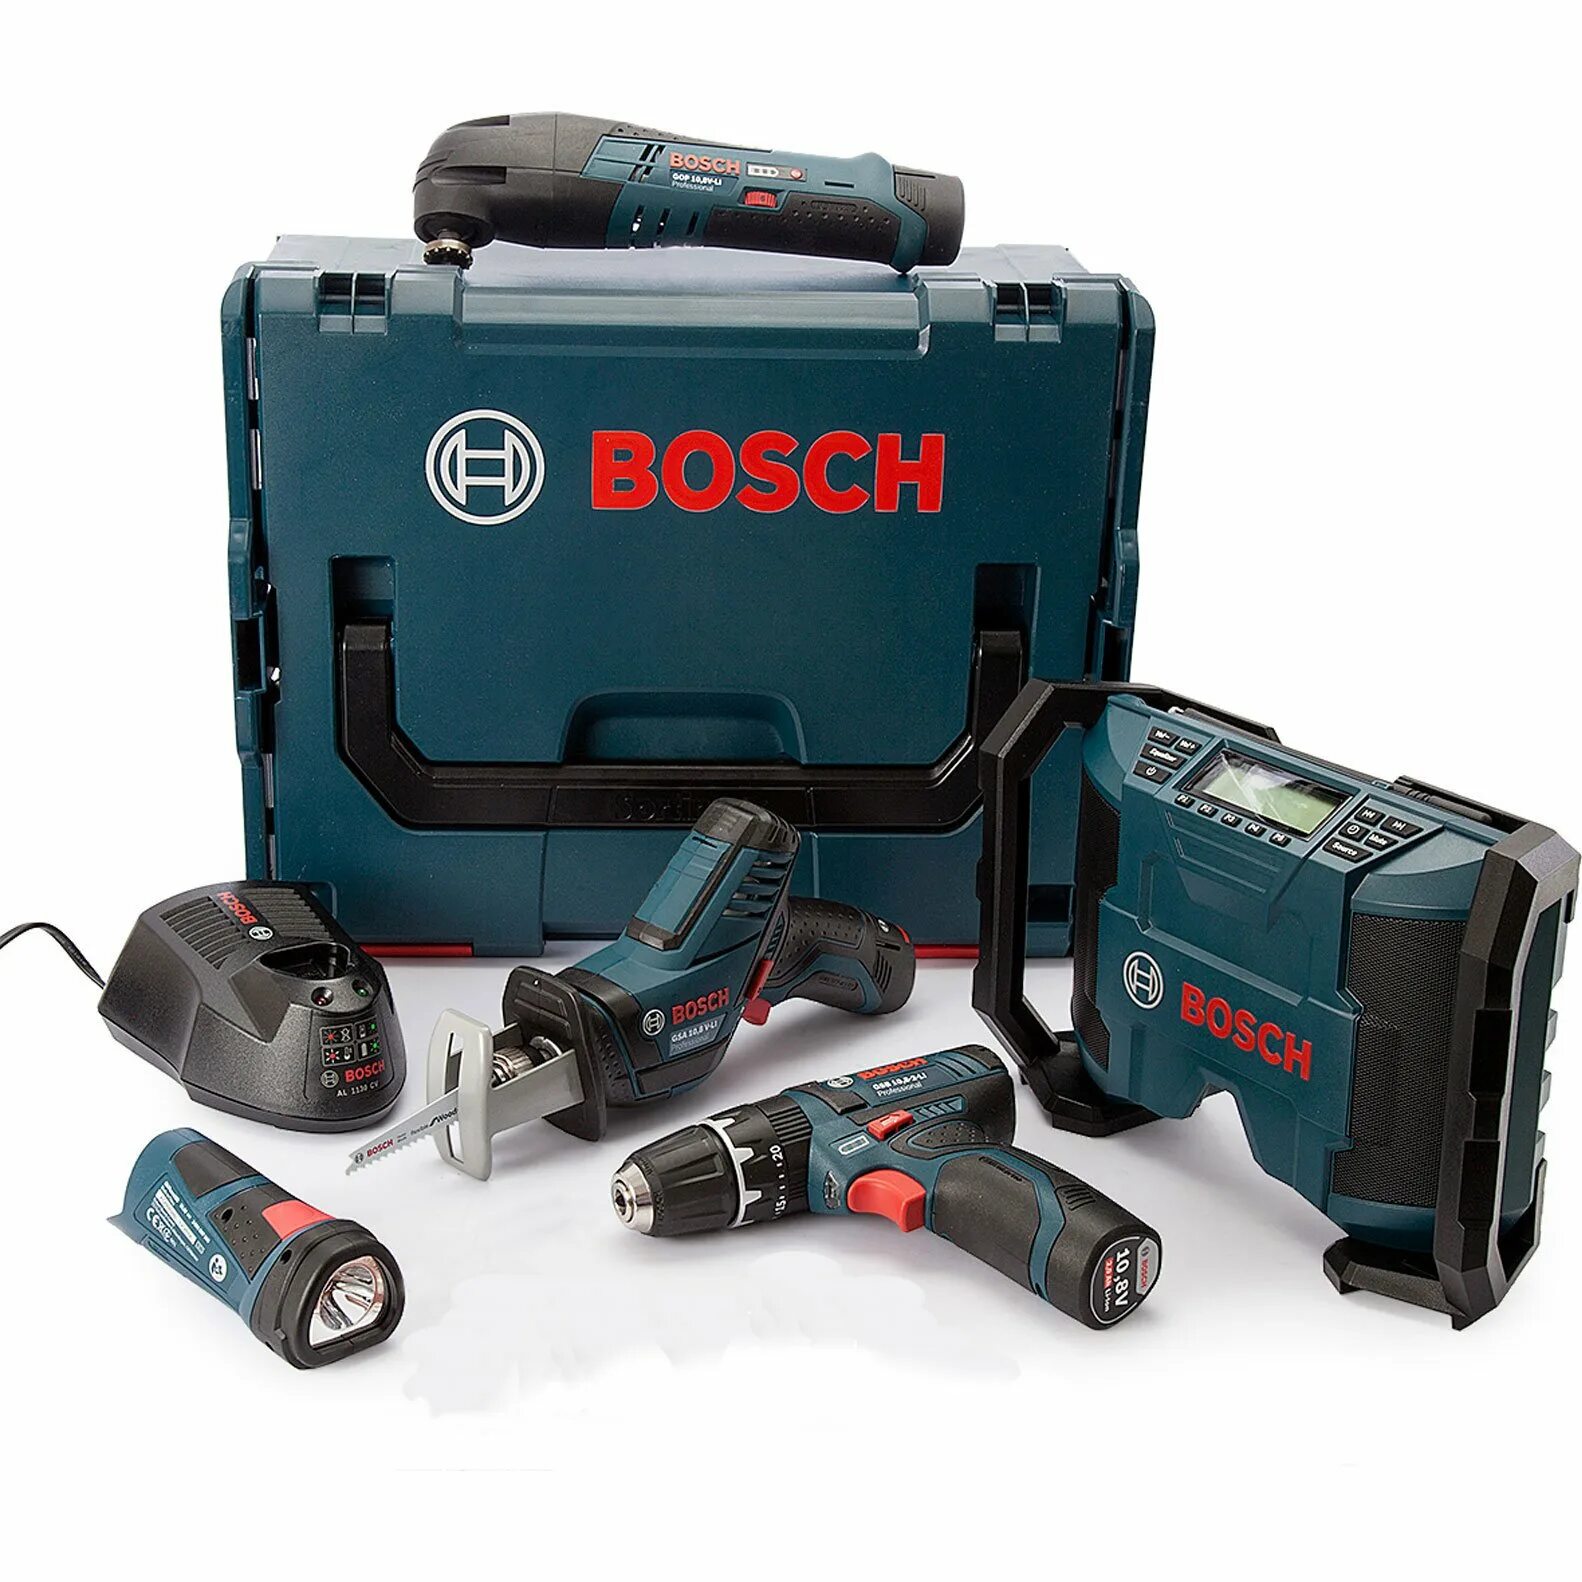 Bosch 12v инструмент. Аккумуляторный инструмент Bosch 12v. Bosch 12v комплекты. Bosch 12v линейка.